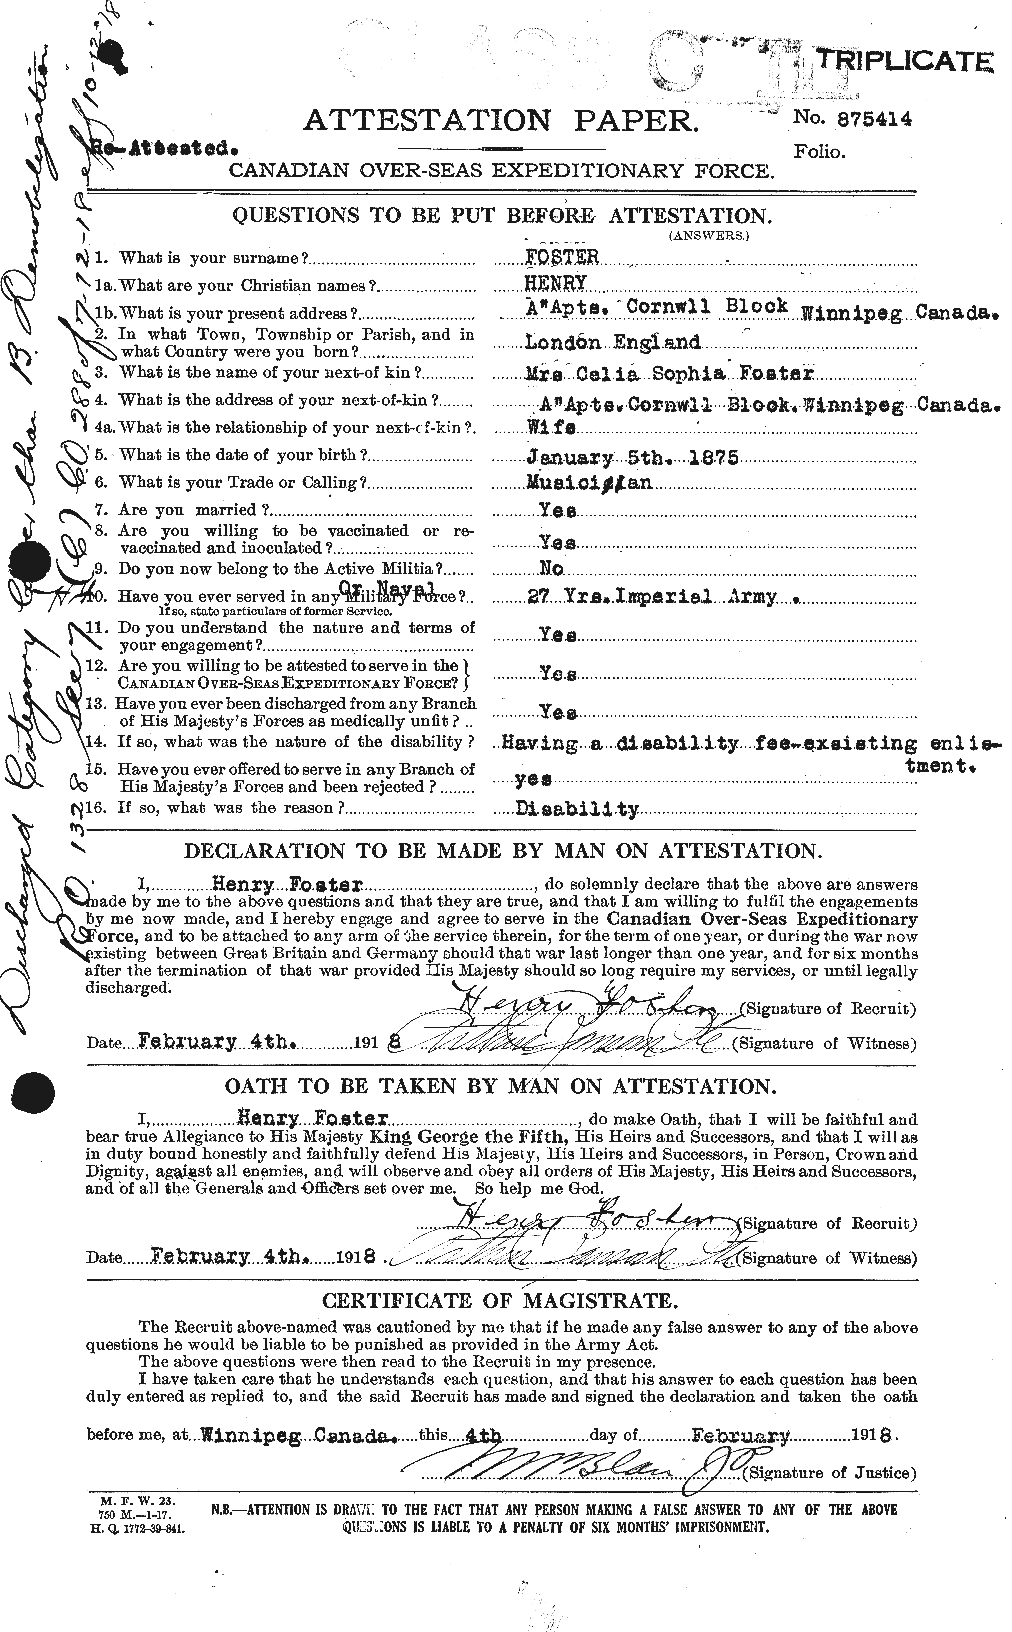 Dossiers du Personnel de la Première Guerre mondiale - CEC 333238a